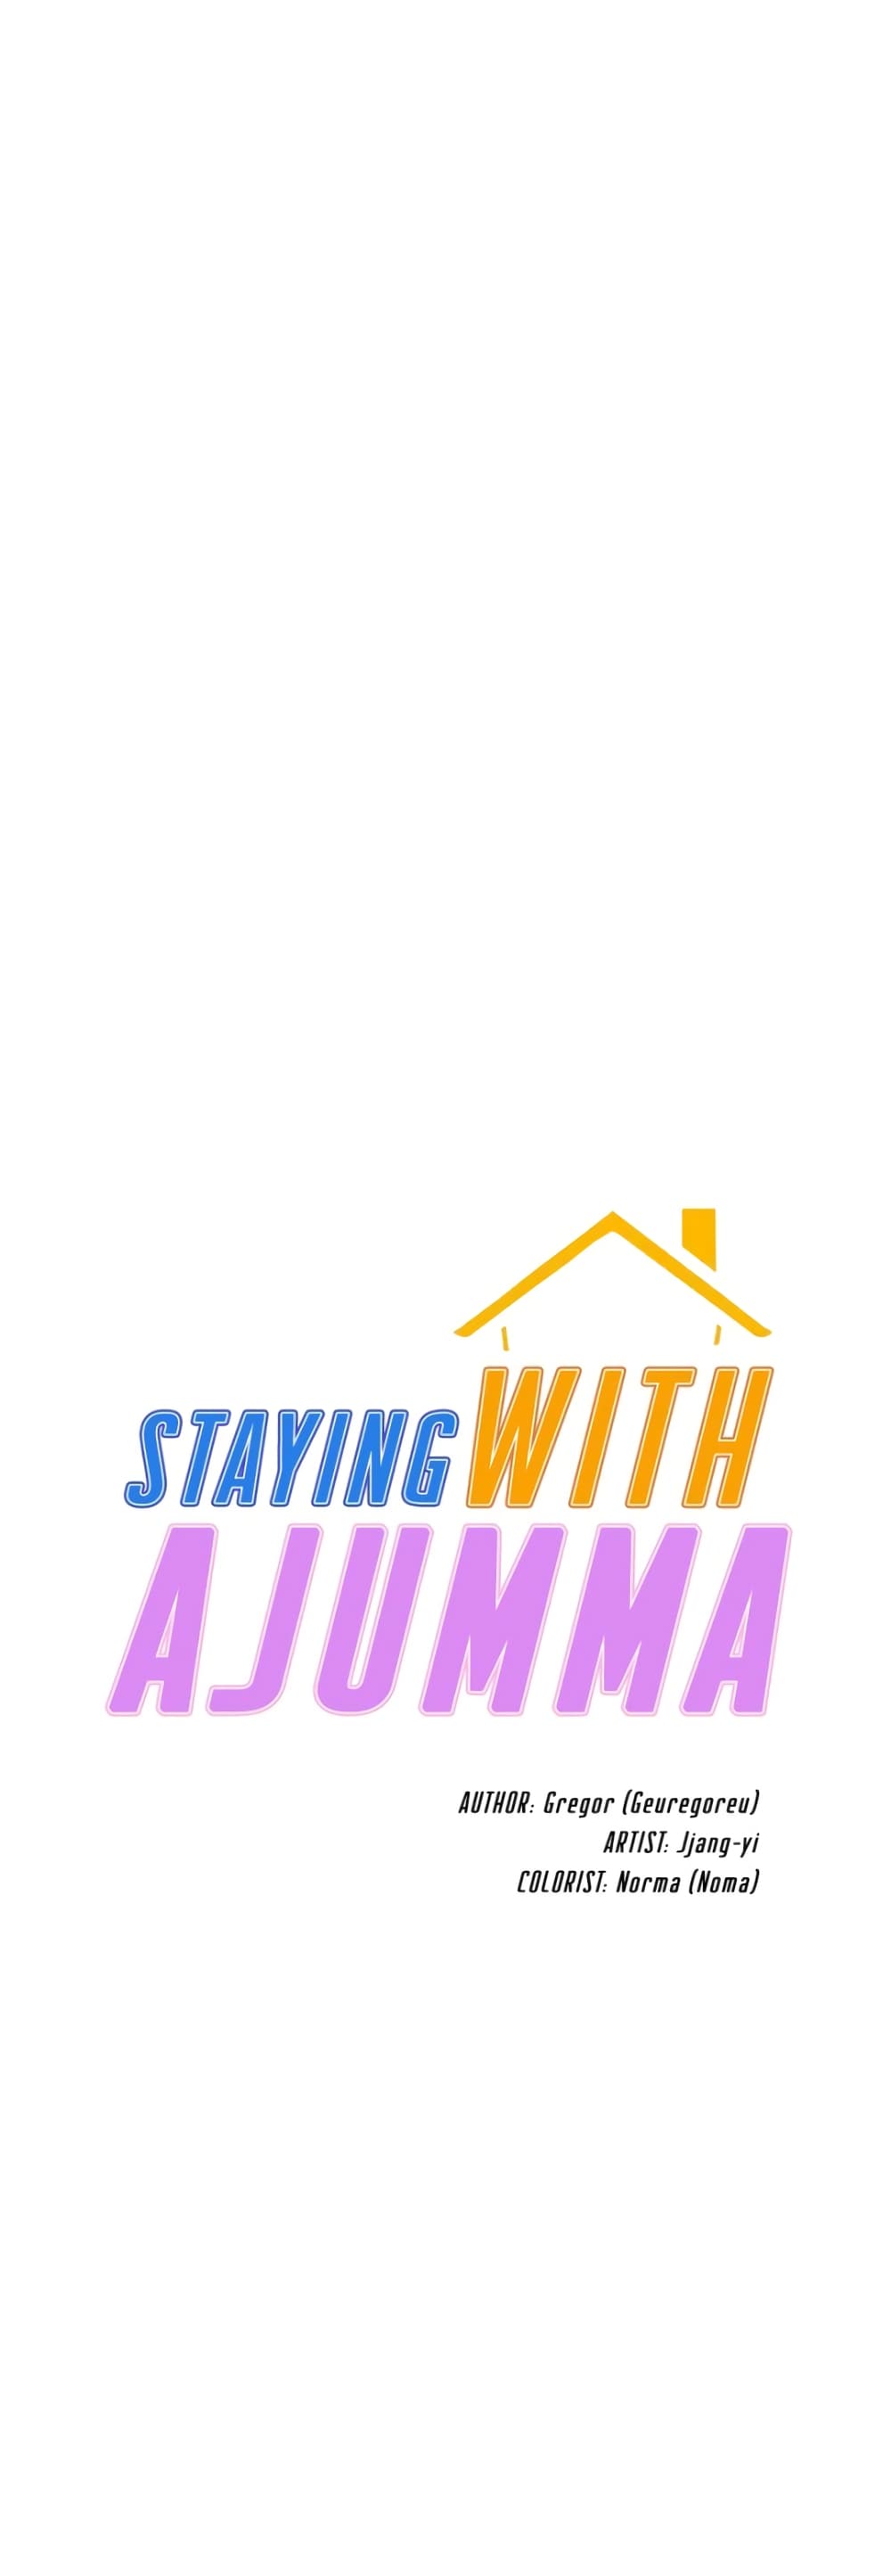 Staying with Ajumma 51-51